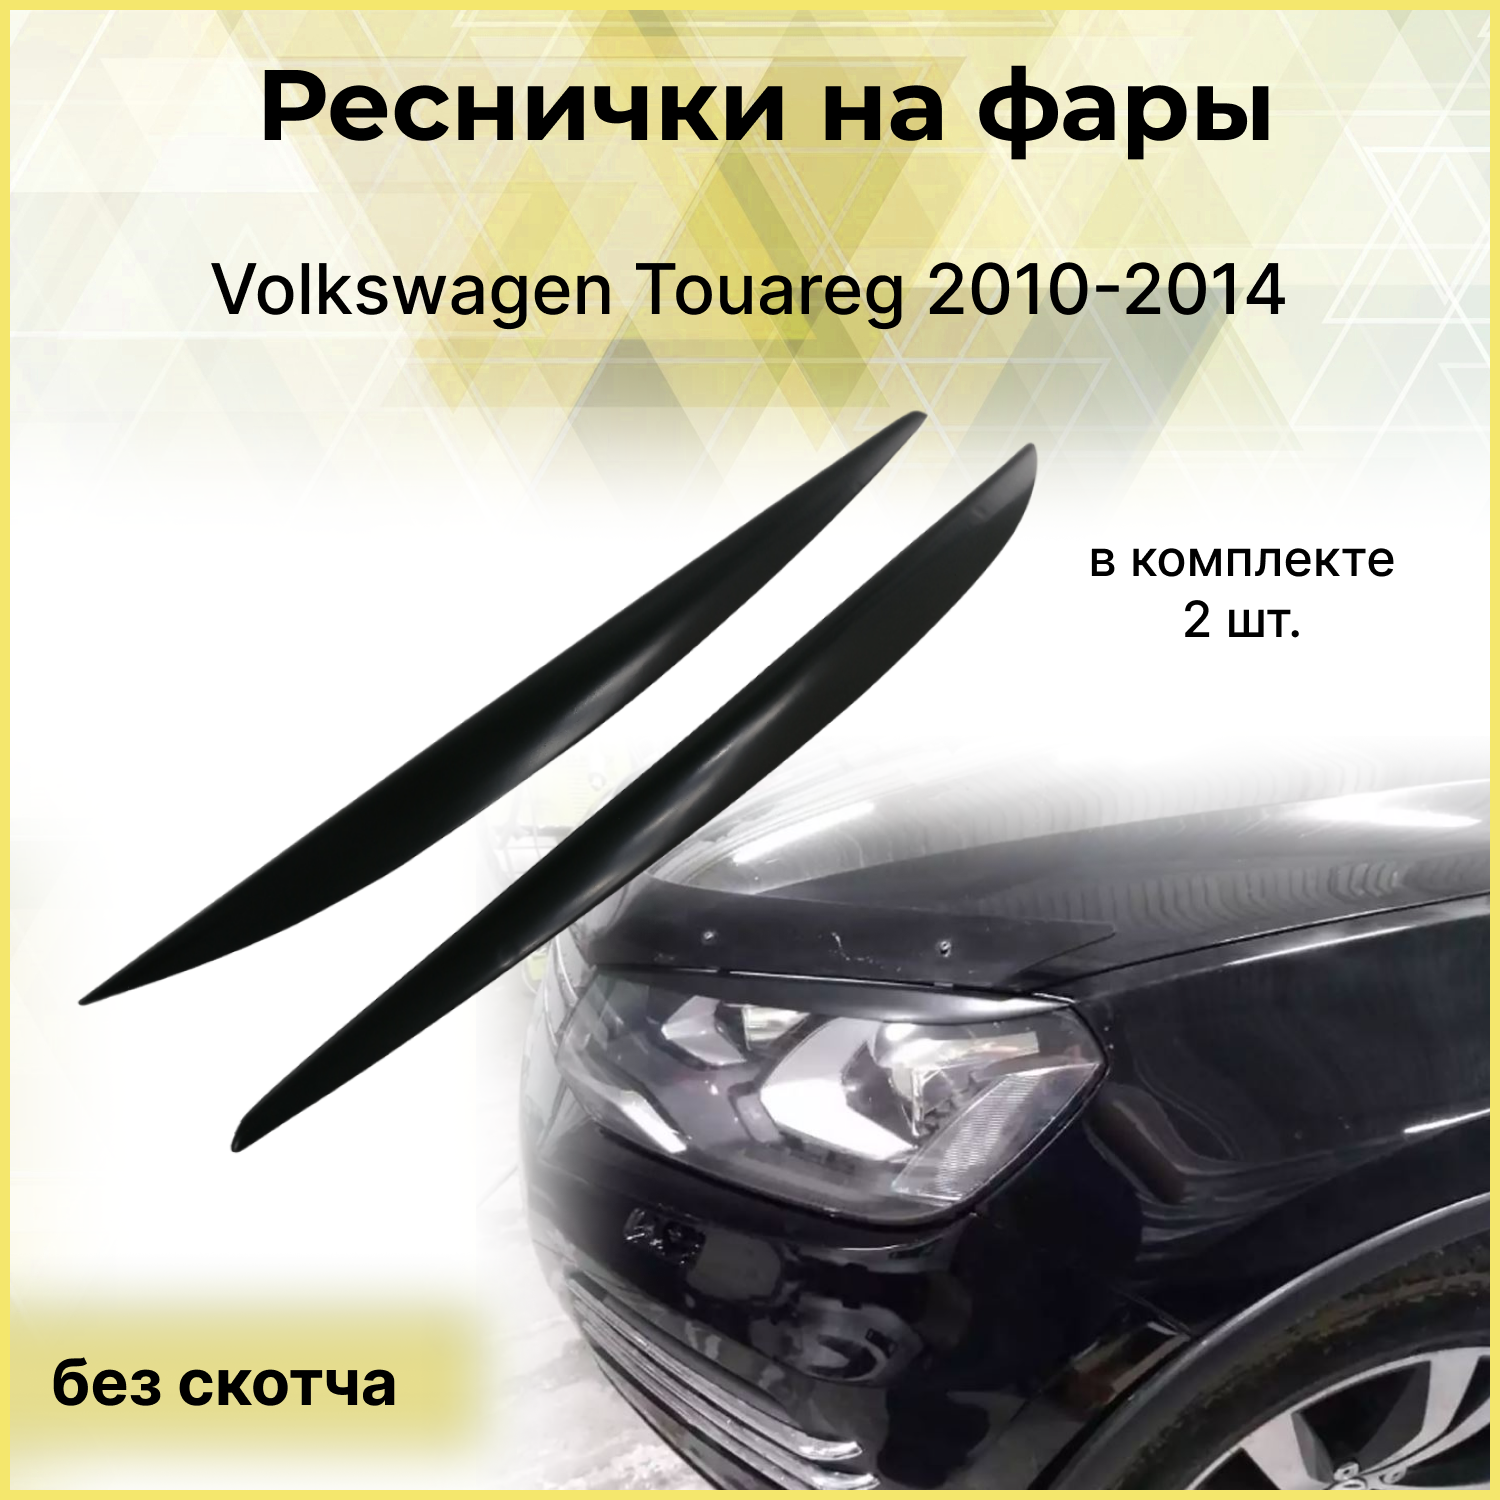 Реснички на фары Volkswagen Touareg 2010-2014